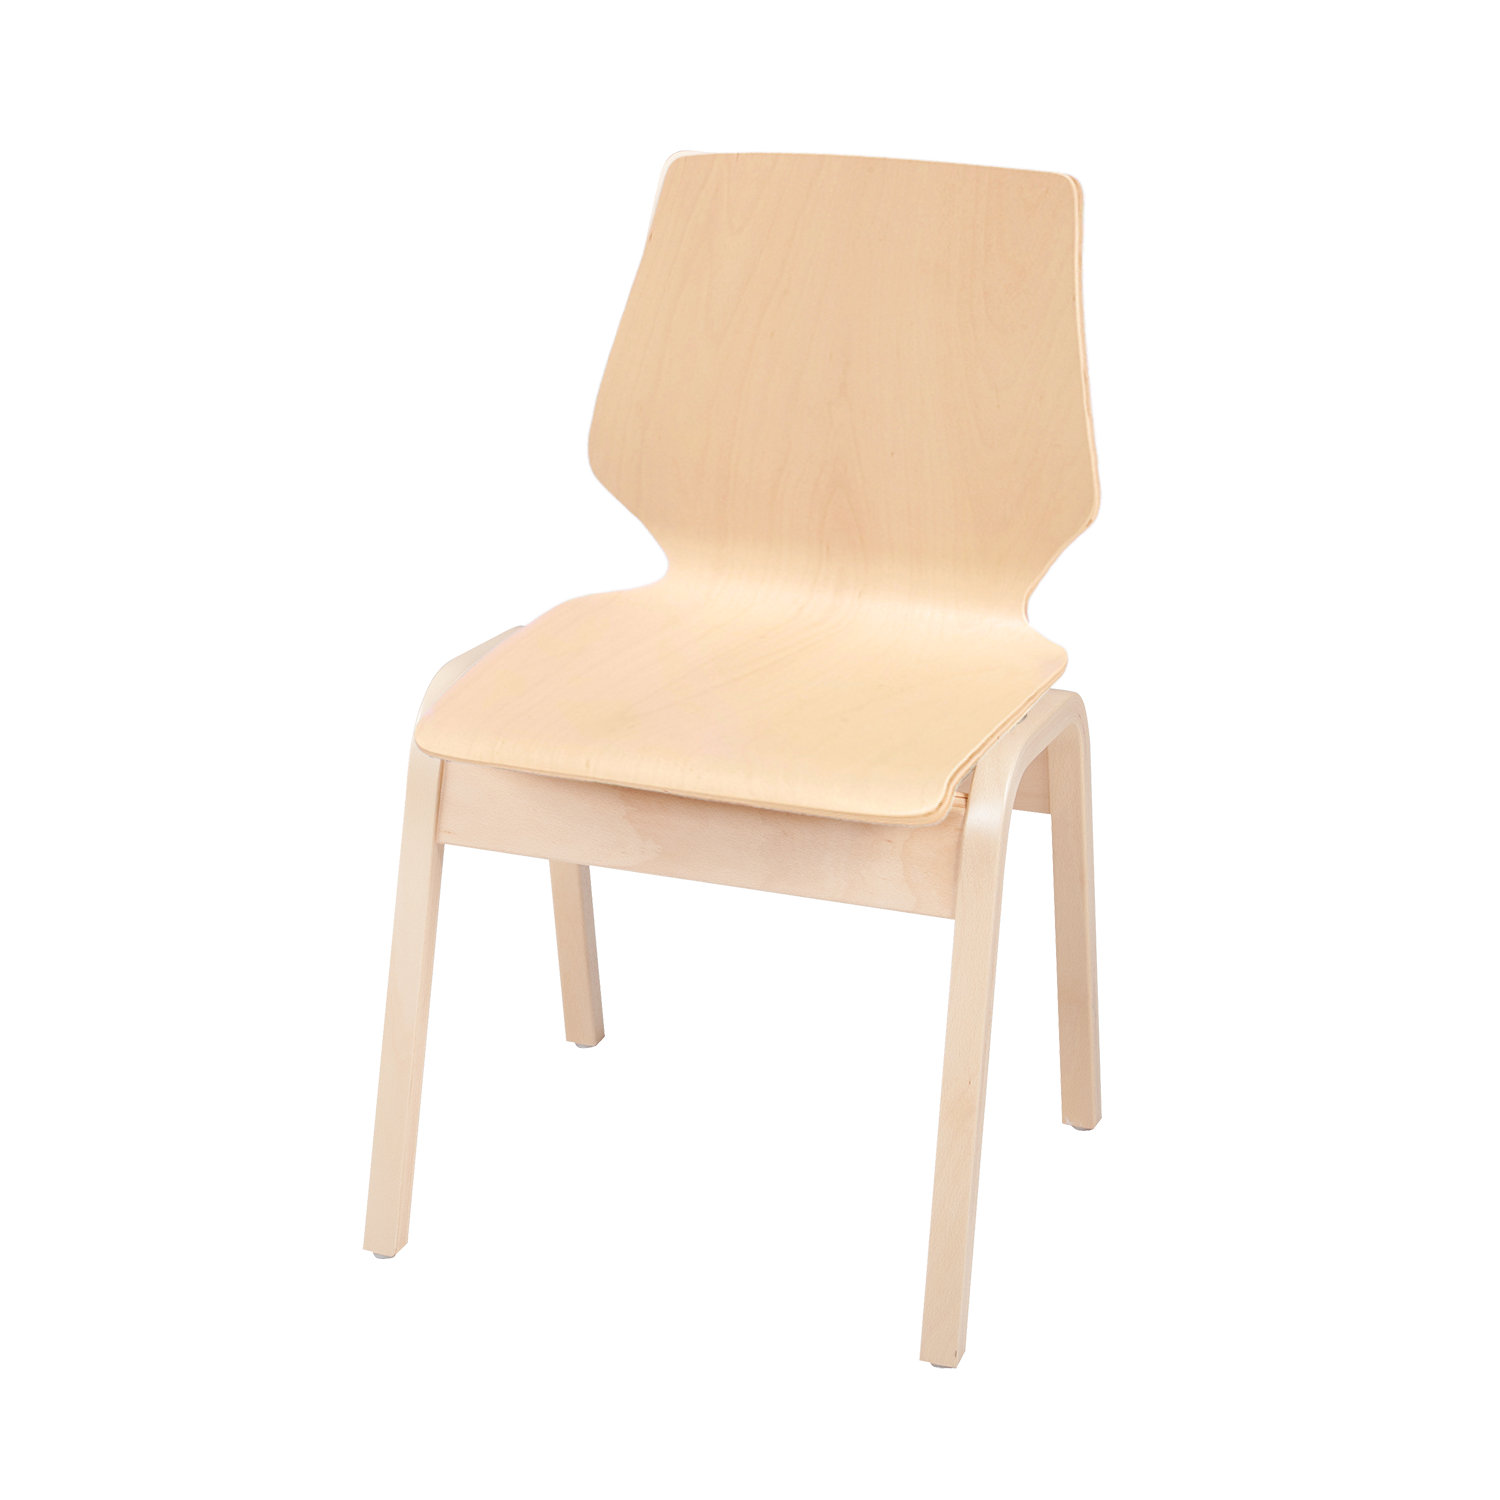 Moritz stapelbare stoel met multiplex frame